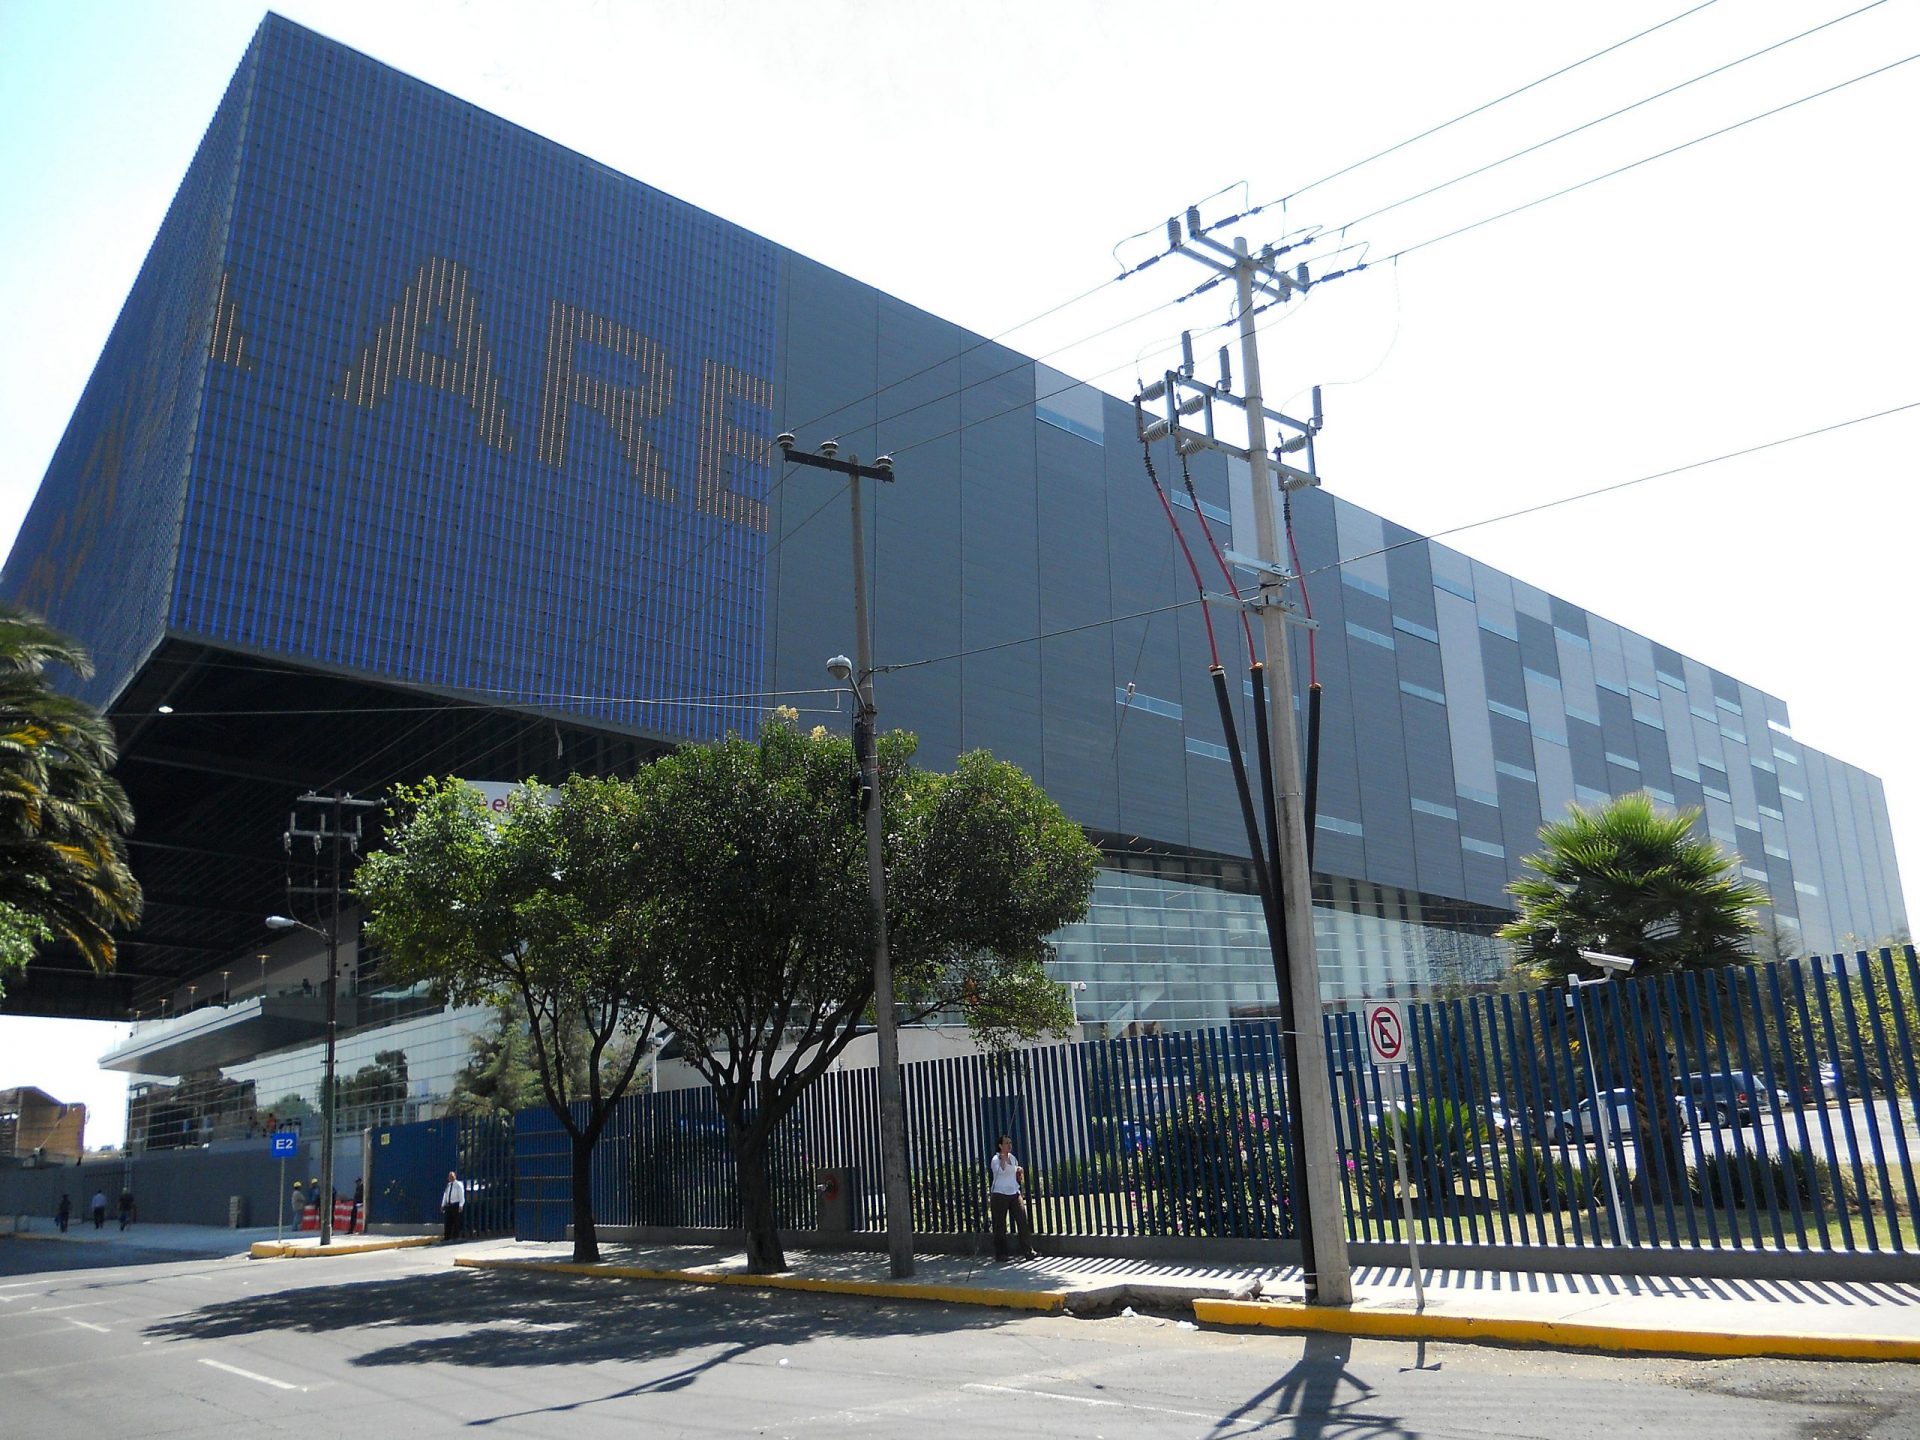  Arena Ciudad De México se convierte en autocinema, al menos en la pandemia